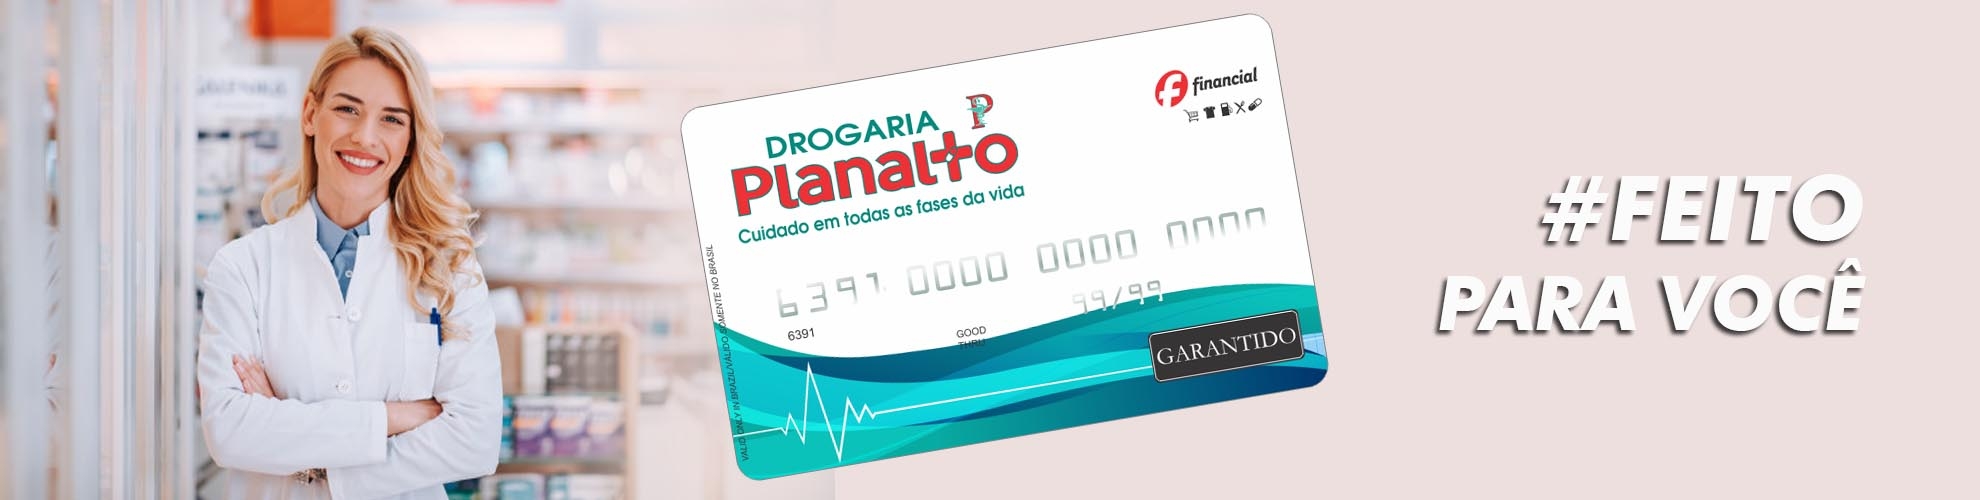 Cartão de Crédito Drogaria Planalto